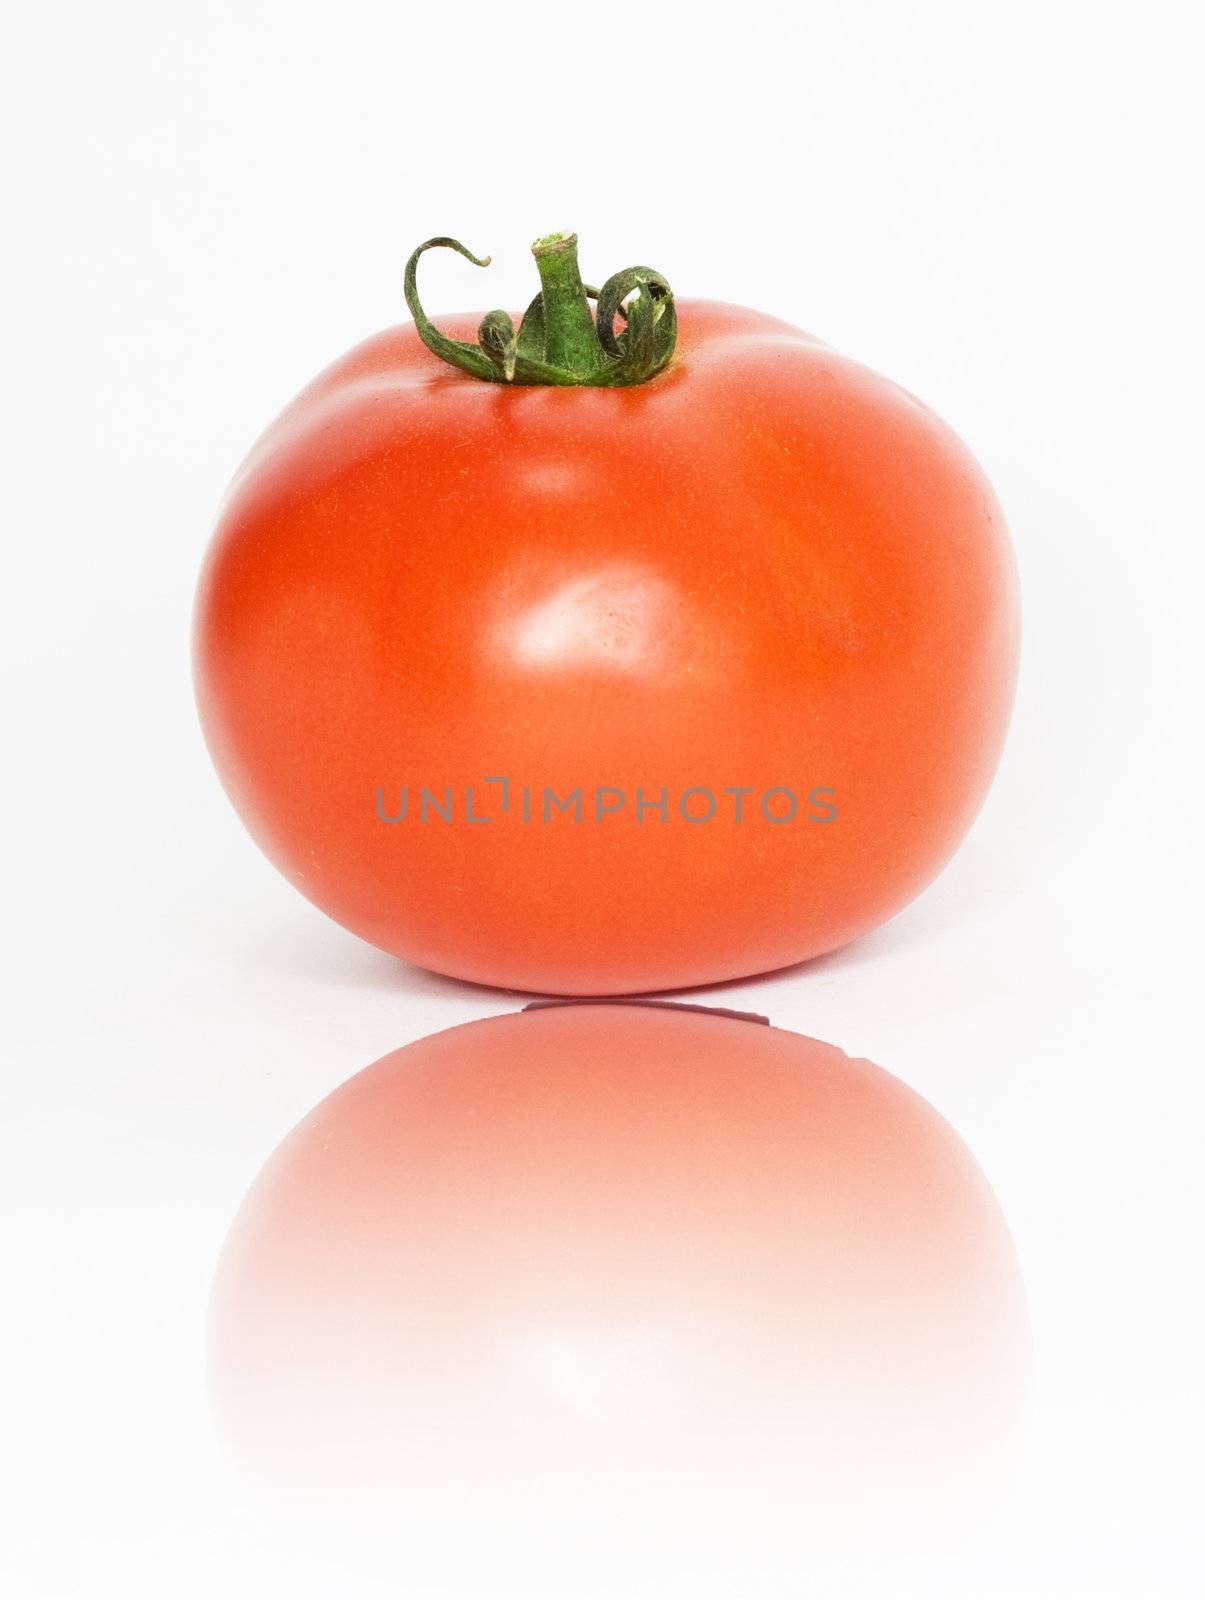 one tomato